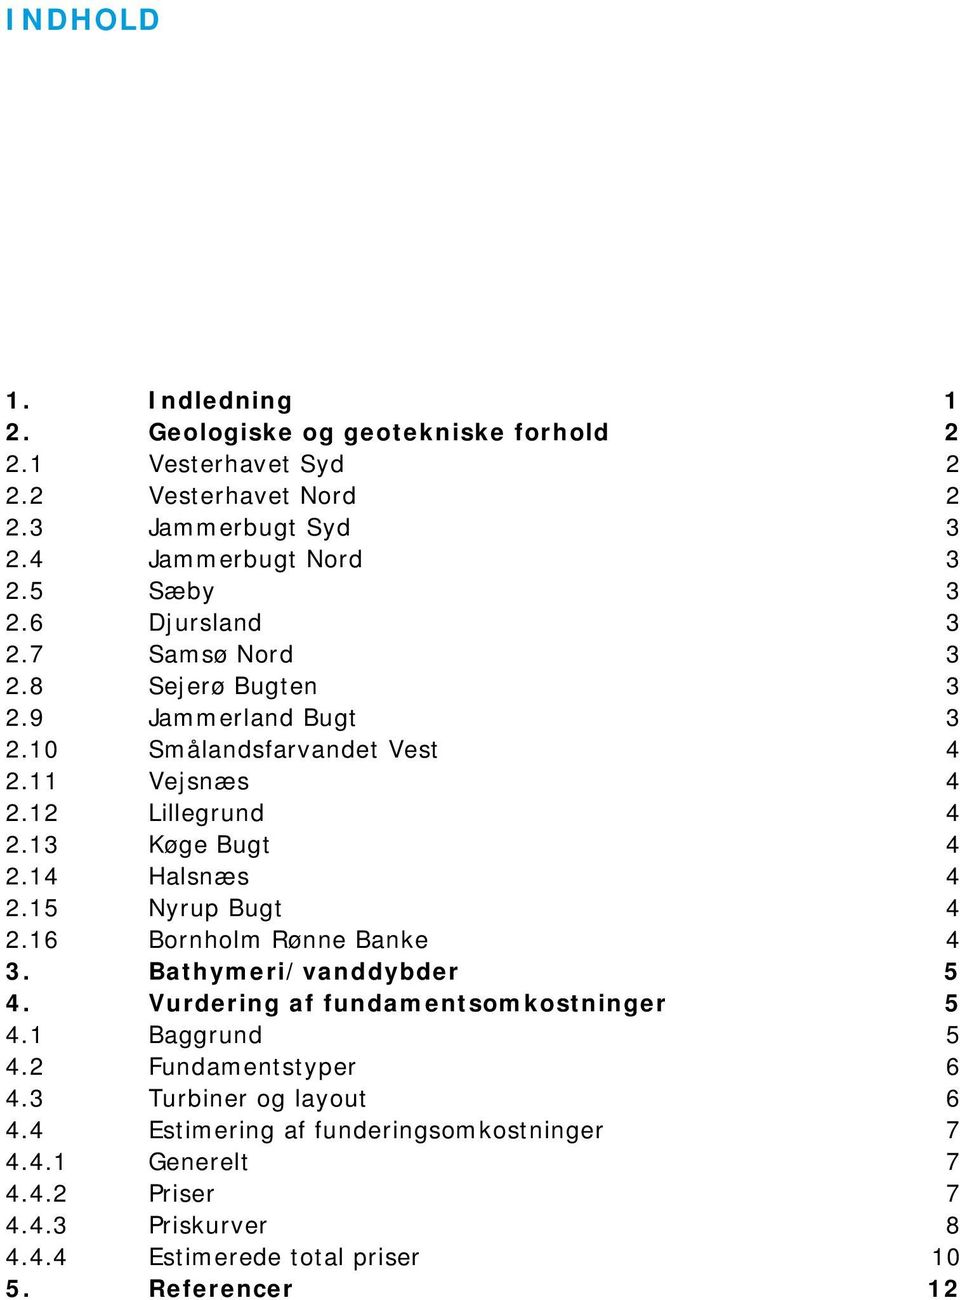 13 Køge Bugt 4 2.14 Halsnæs 4 2.15 Nyrup Bugt 4 2.16 Bornholm Rønne Banke 4 3. Bathymeri/vanddybder 5 4. Vurdering af fundamentsomkostninger 5 4.1 Baggrund 5 4.